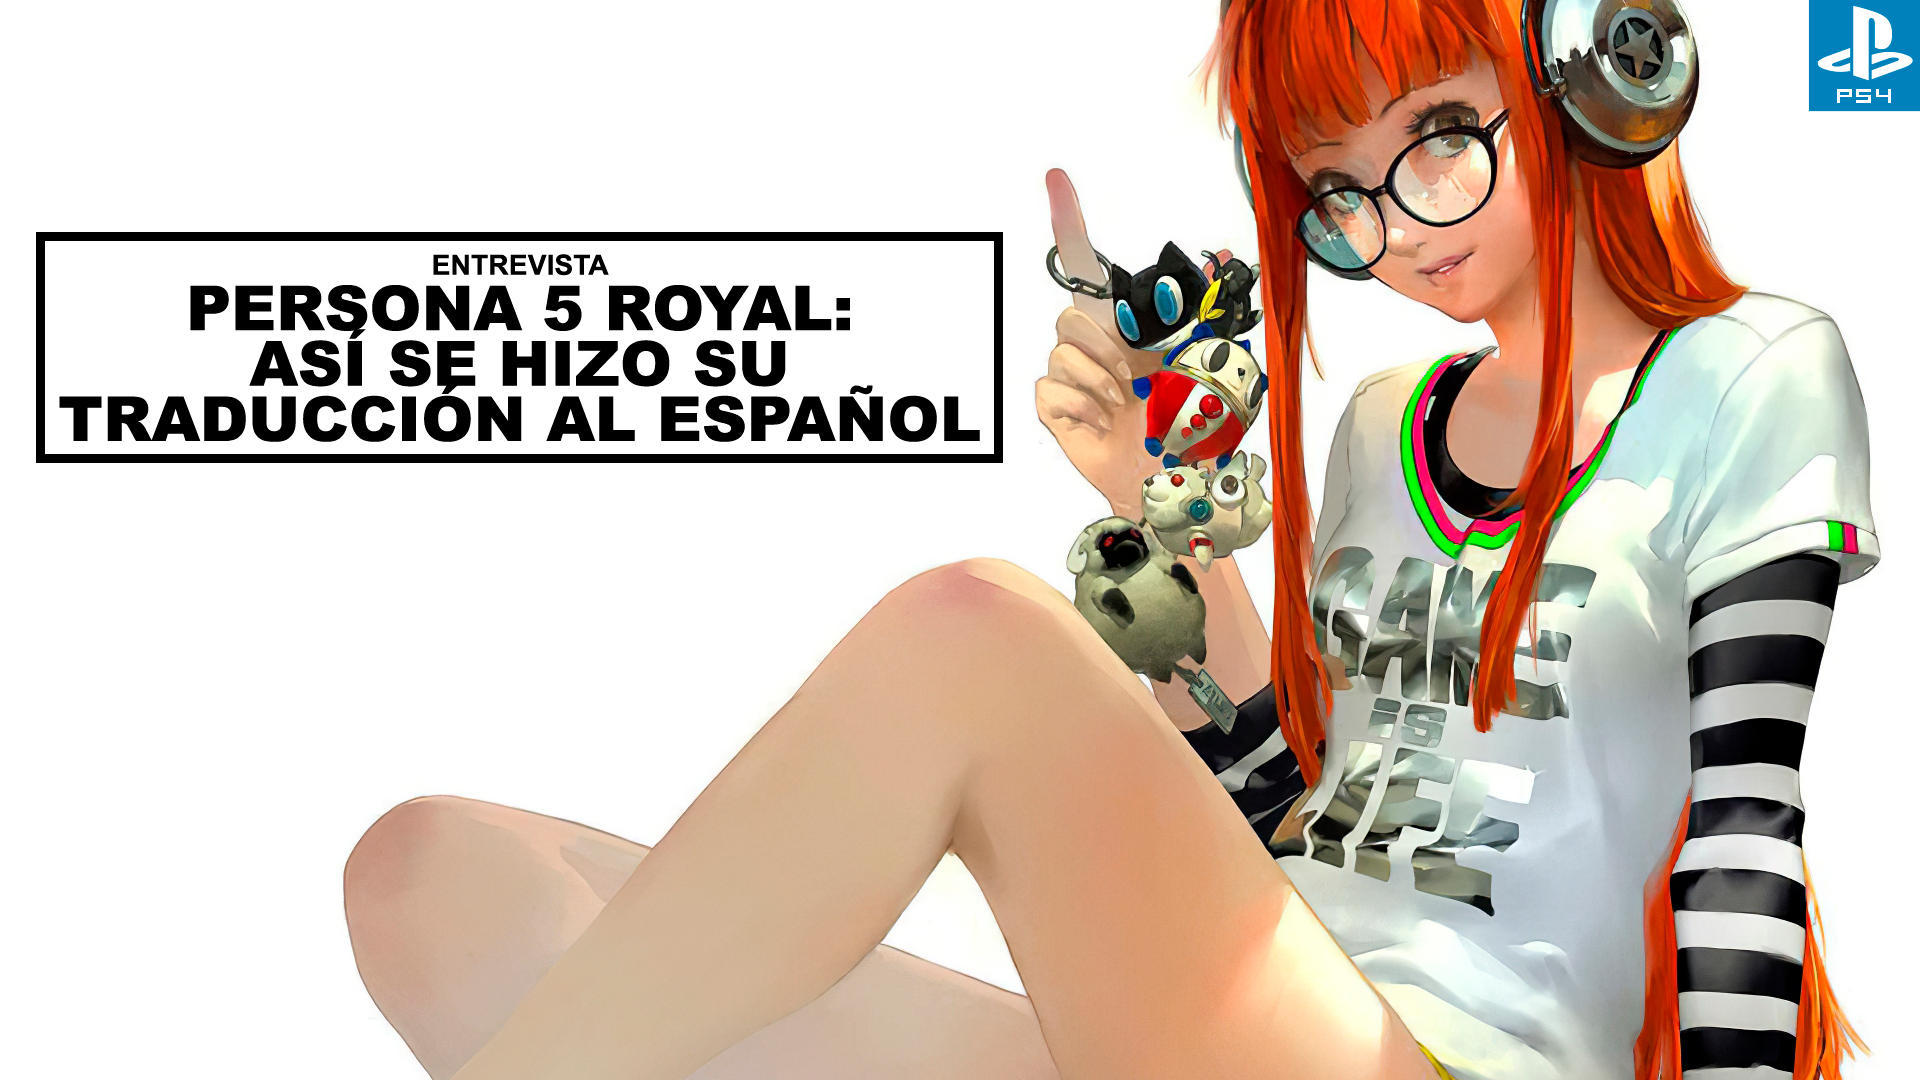 Persona 5 Royal: As se hizo su traduccin al espaol